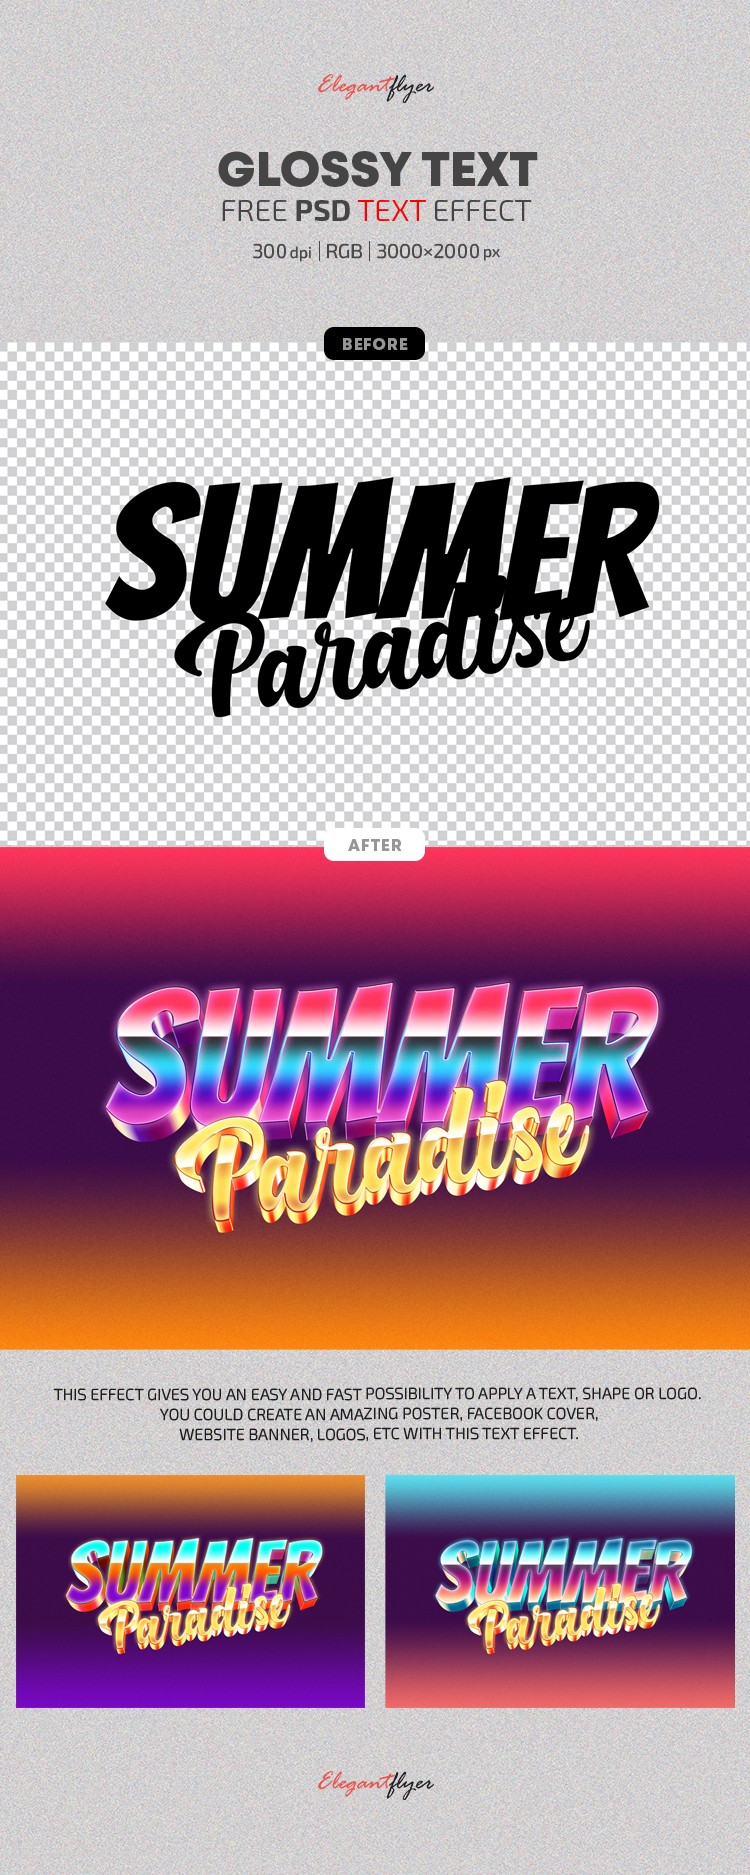 Summer Paradise Text Effects by ElegantFlyer